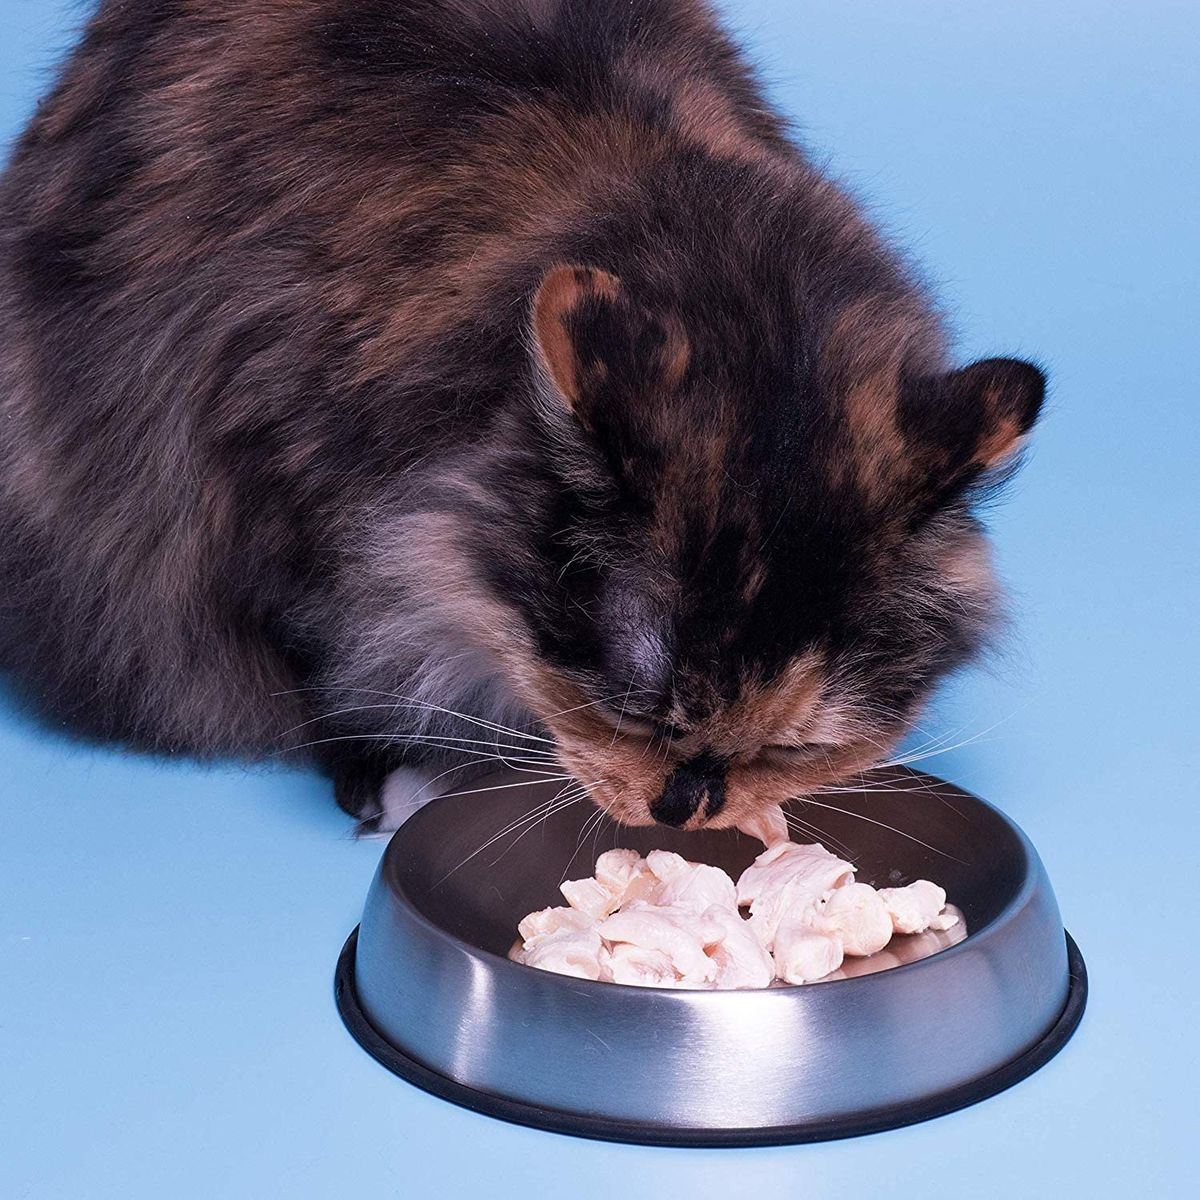 Le 5 migliori ciotole per cibo per gatti, secondo un veterinario